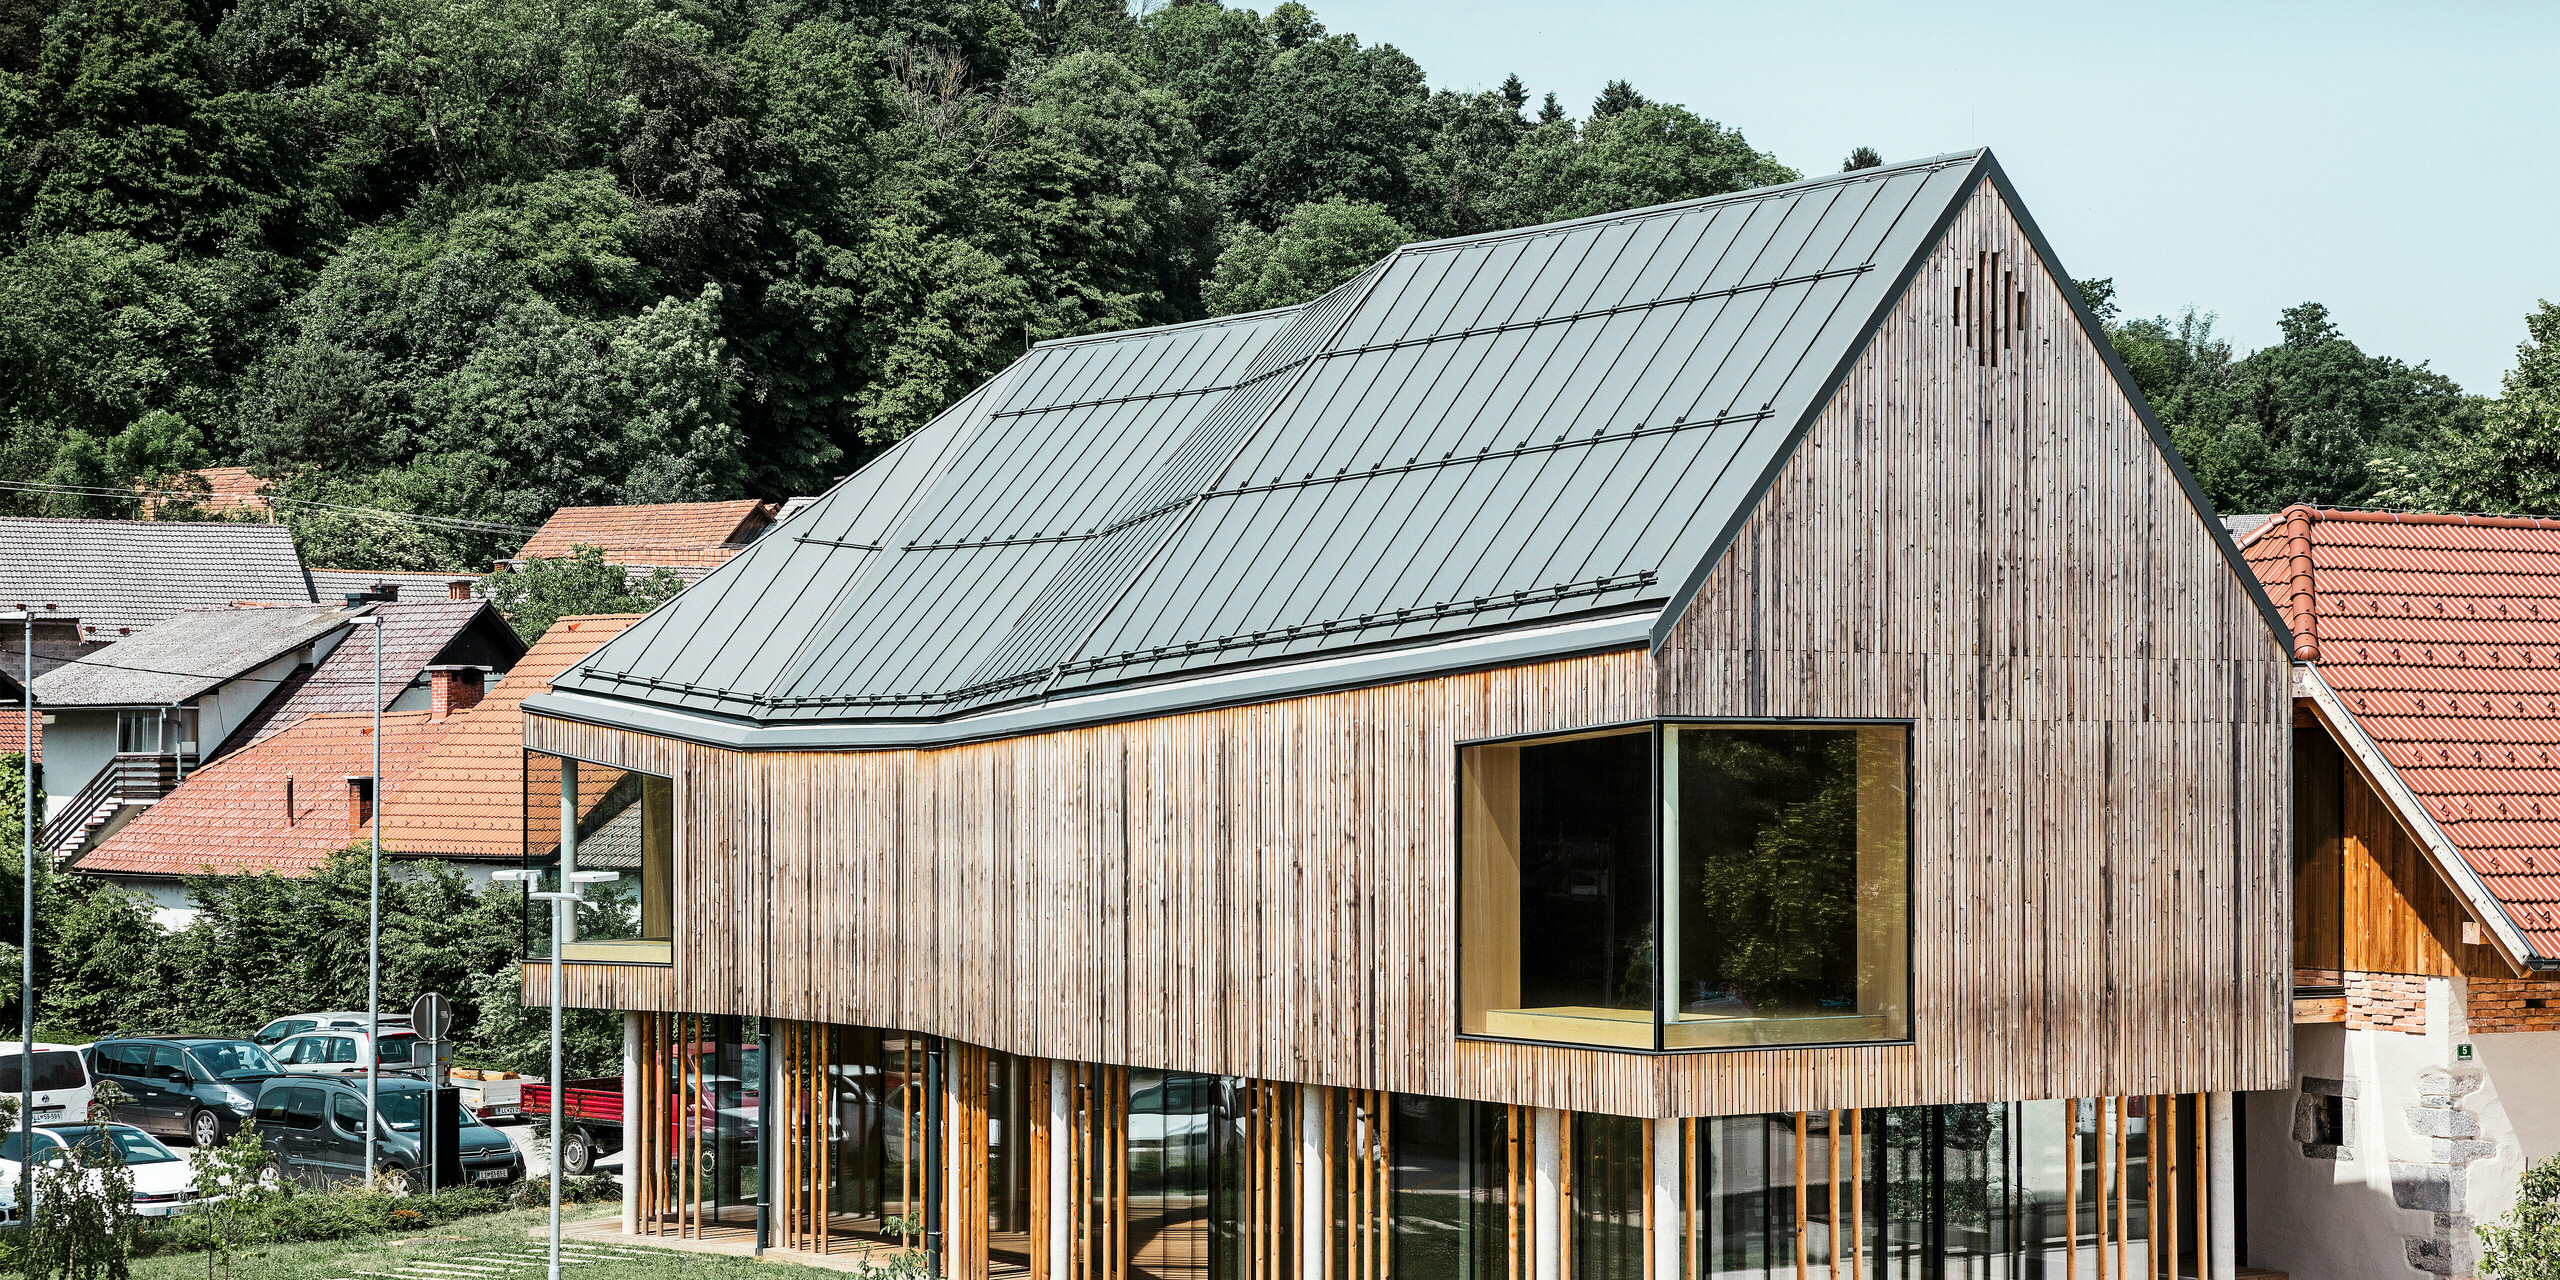 Arhitekturni načrt centra za obiskovalce na Igu v Sloveniji, za katerega je značilna sodobna lesena fasada, podprta z nizom vitkih stebrov. Značilna temno siva streha PREFALZ se brezhibno zliva z naravnim in podeželskim okoljem ter predstavlja vznemirljiv kontrast okoliškim tradicionalnim rdečim strešnikom. Ta stavba je primer zavezanosti podjetja PREFA k inovativnim in trajnostnim gradbenim materialom.